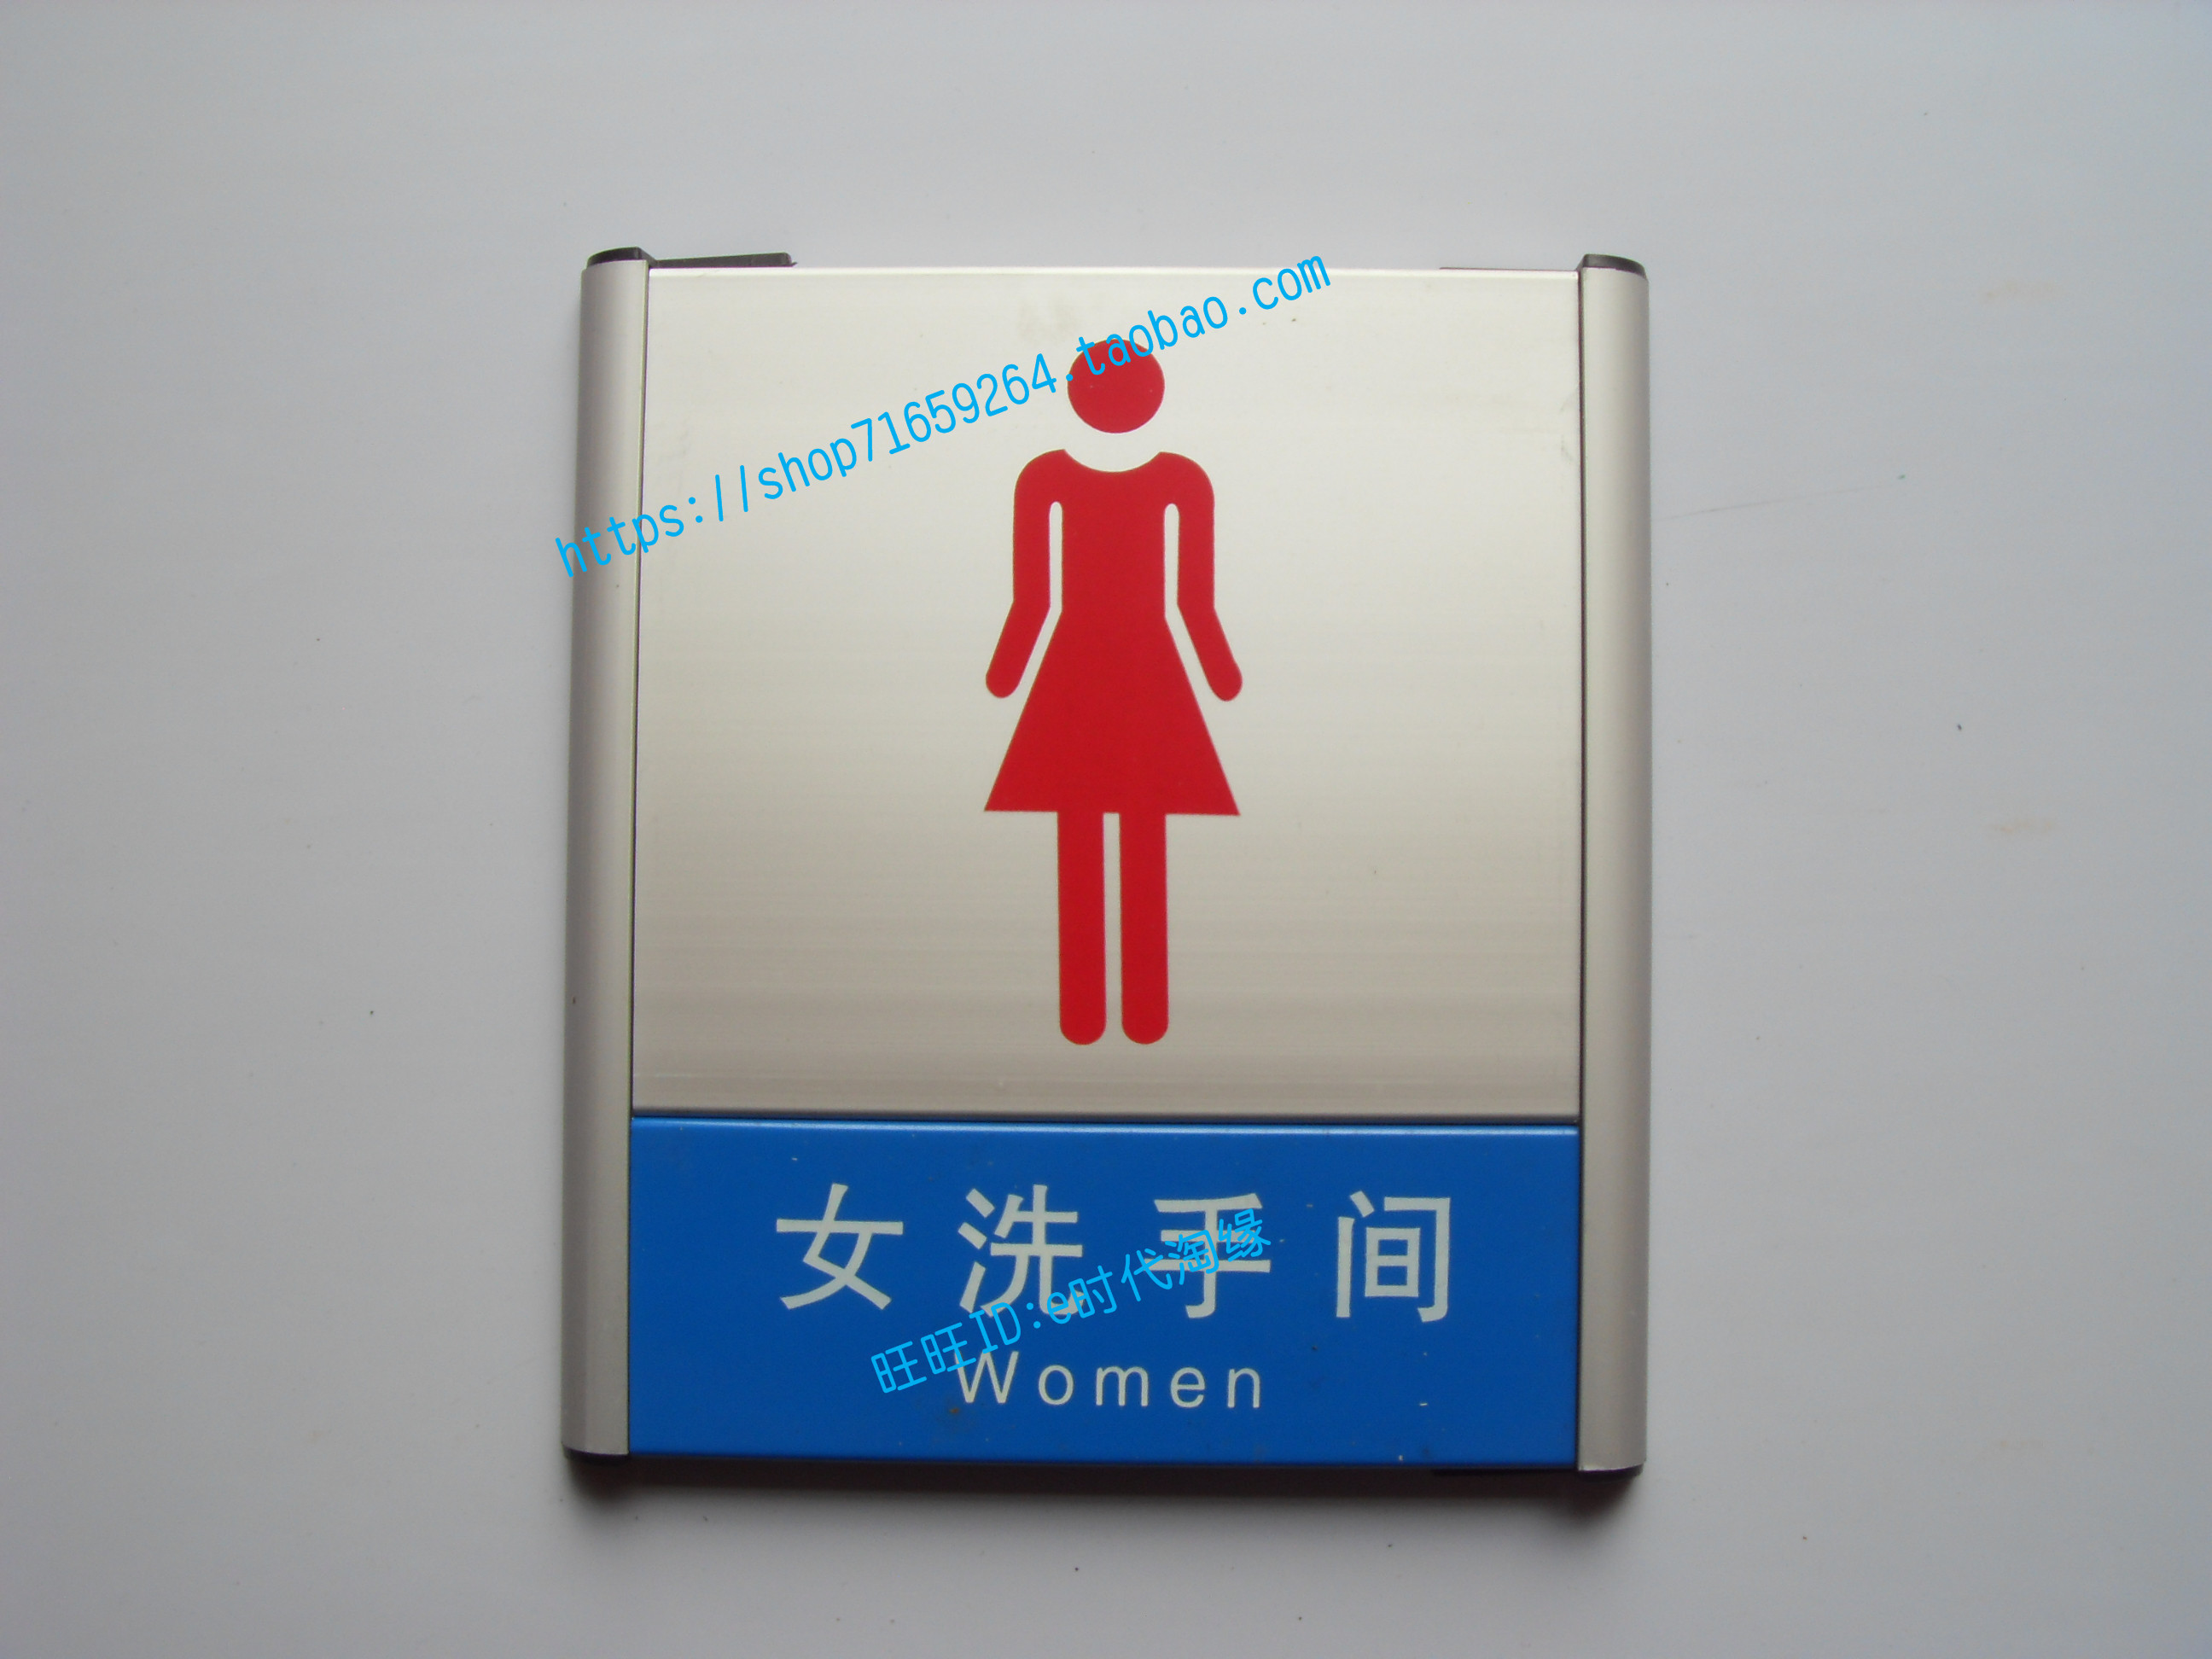 银色铝合金洗手间标牌男士厕所门牌女卫生间间标识WC男女图像标志